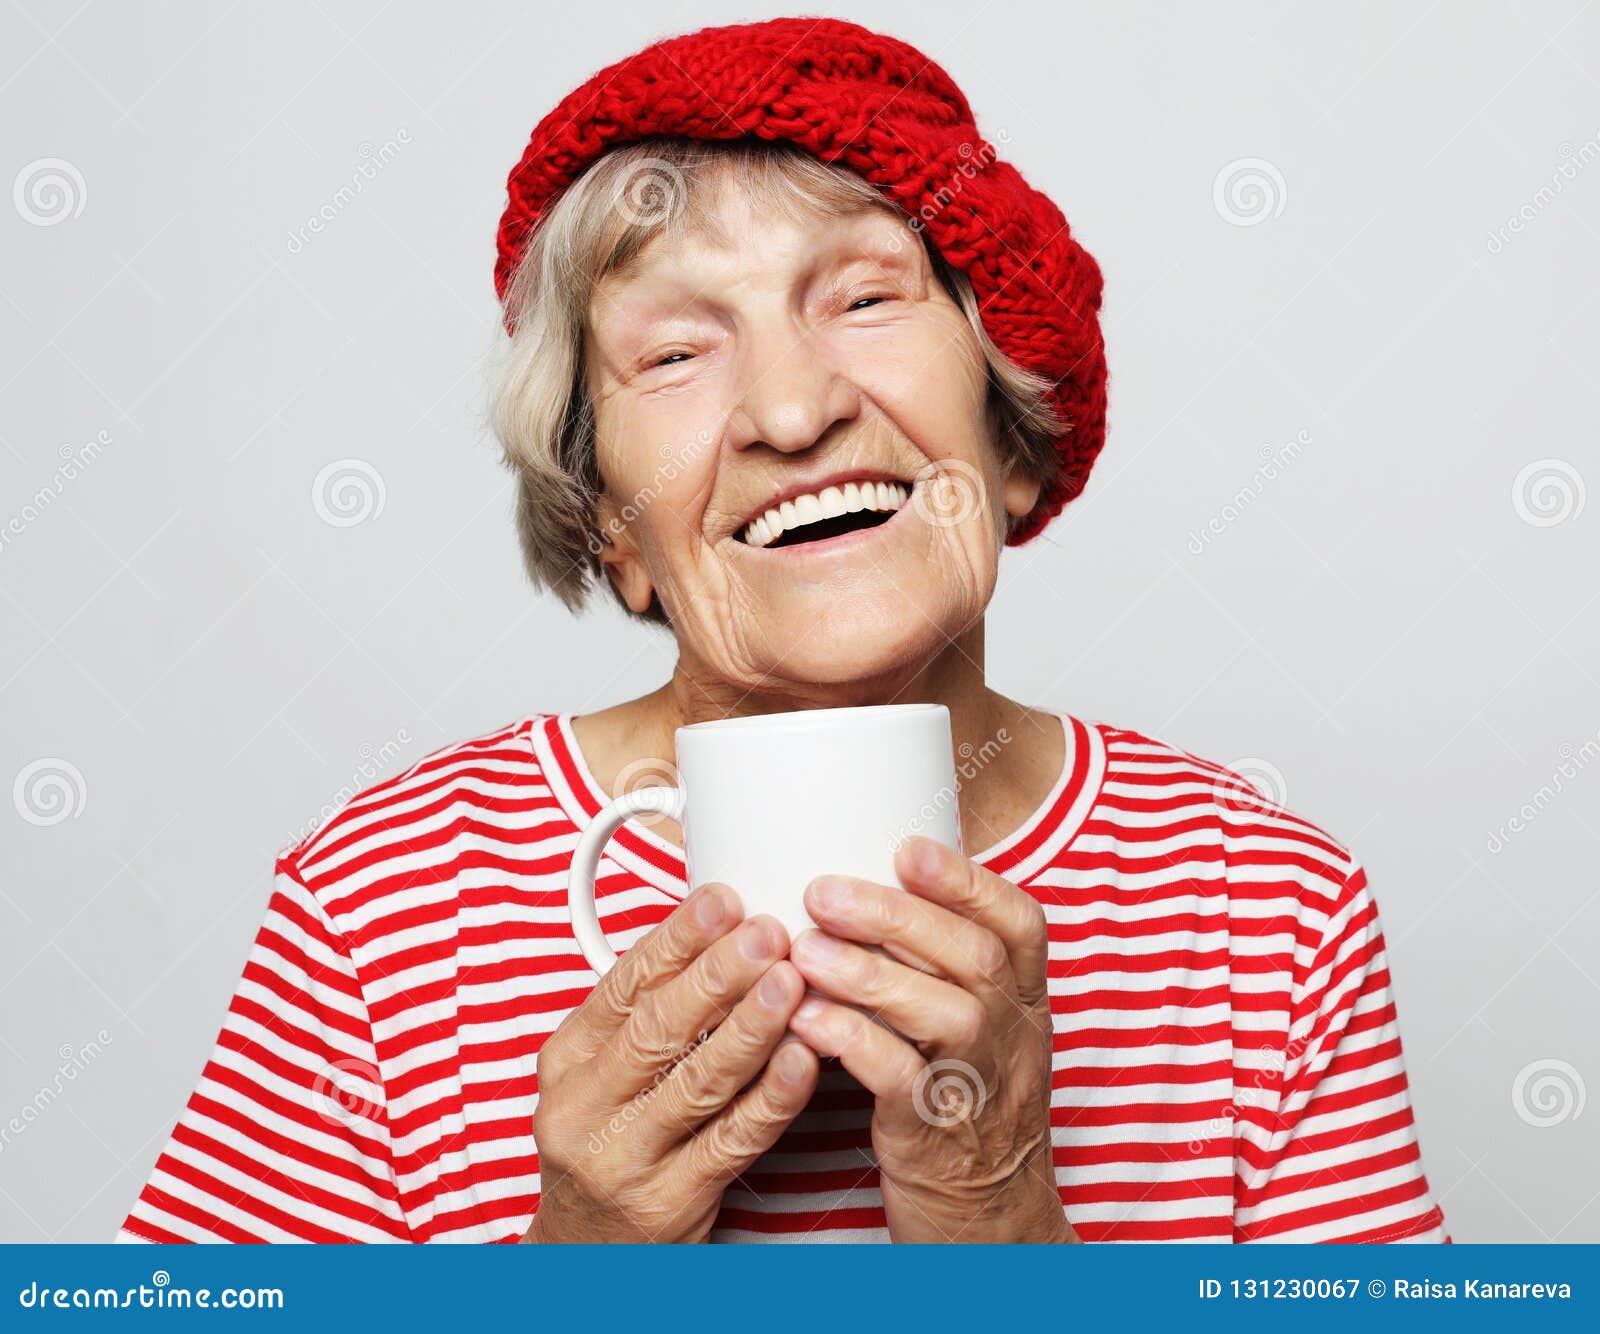 День смеха для пожилых людей. Смех пожилого человека. Смех фото со стариками смеющимися.